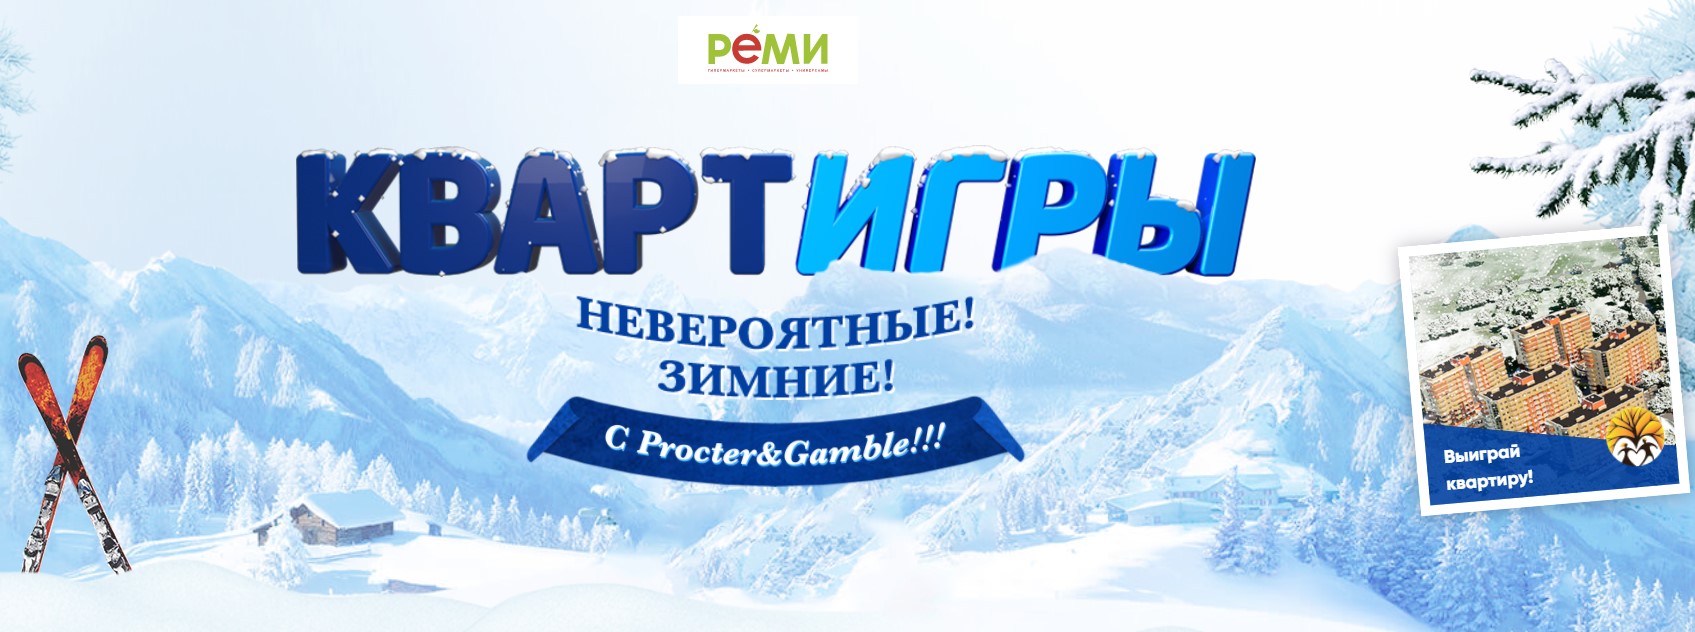 Купуйте продукцію компанії Procter & Gamble в магазині «Ремі» на суму від 999 рублів і вигравайте iPhone X, iPhone 8 Plus, а також головний приз - квартиру